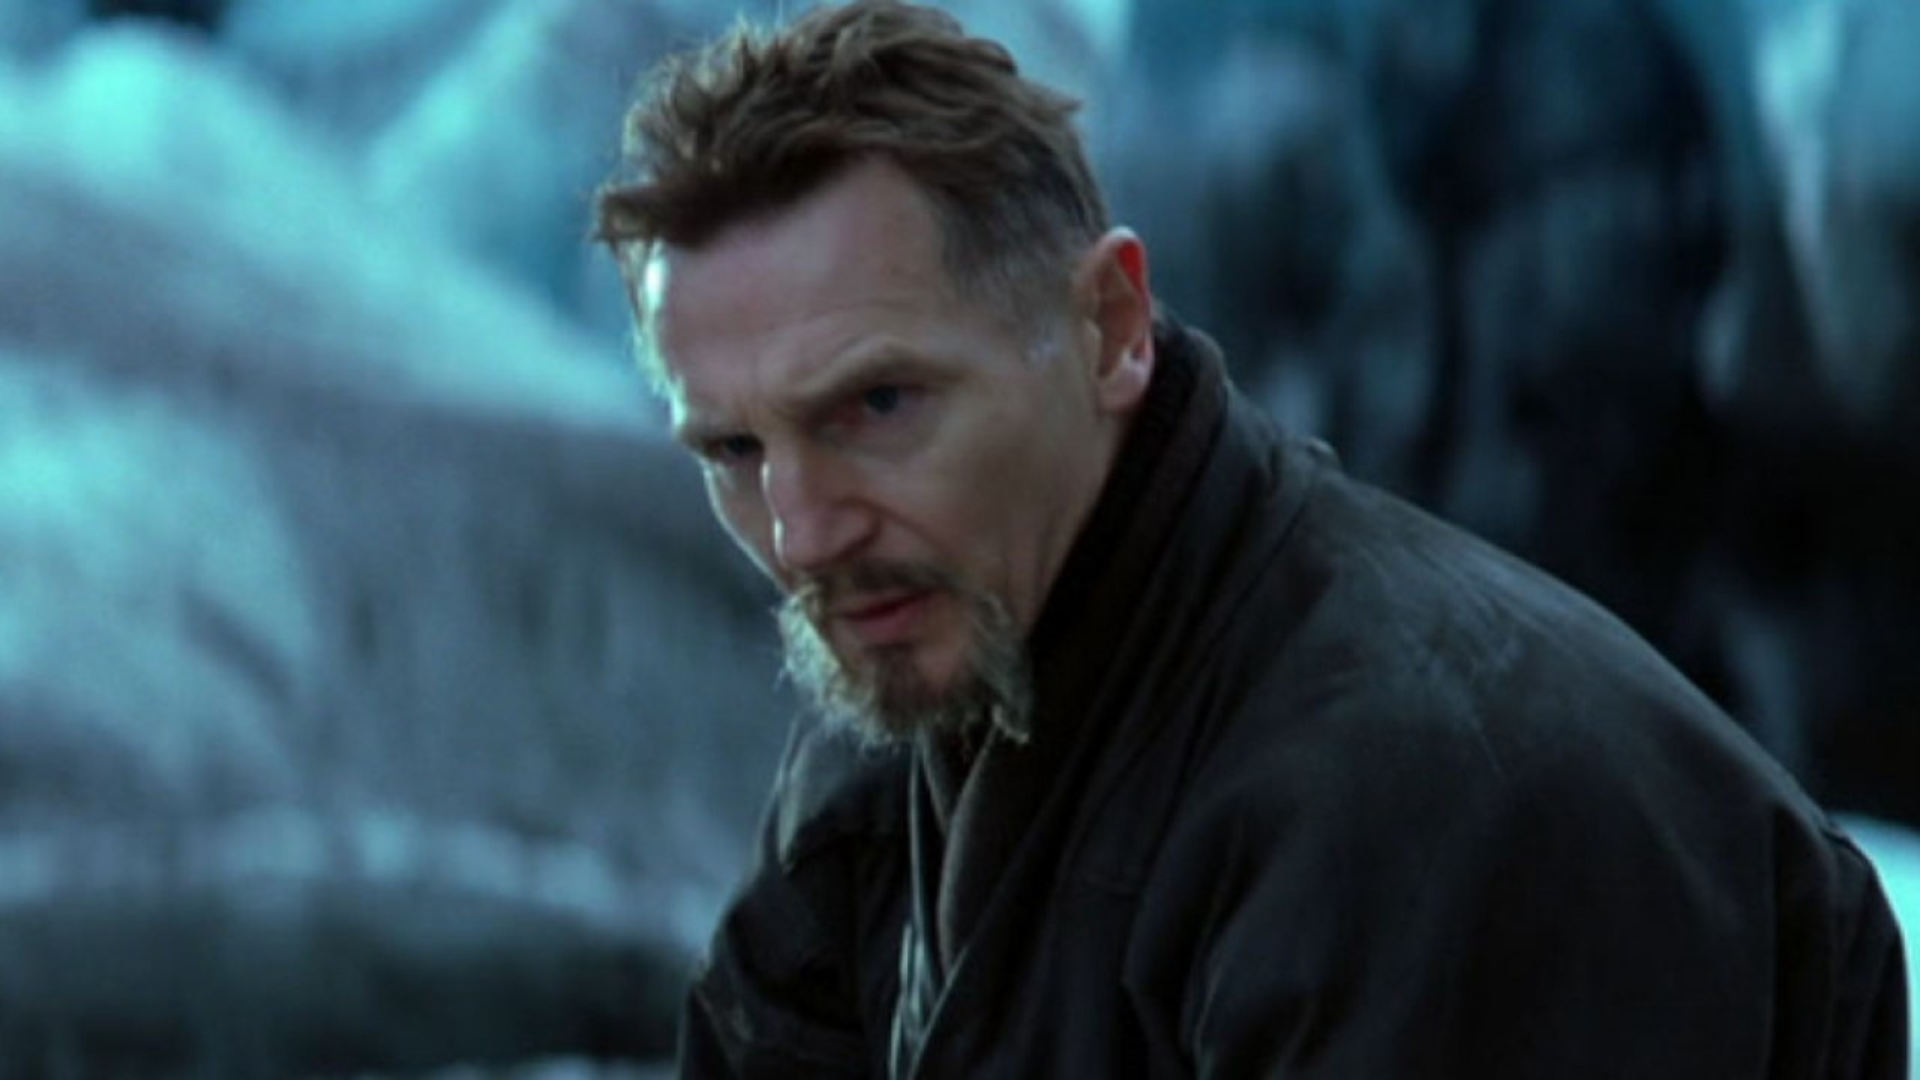 “Sempre a mesma história”, diz Liam Neeson sobre os filmes de super-herói